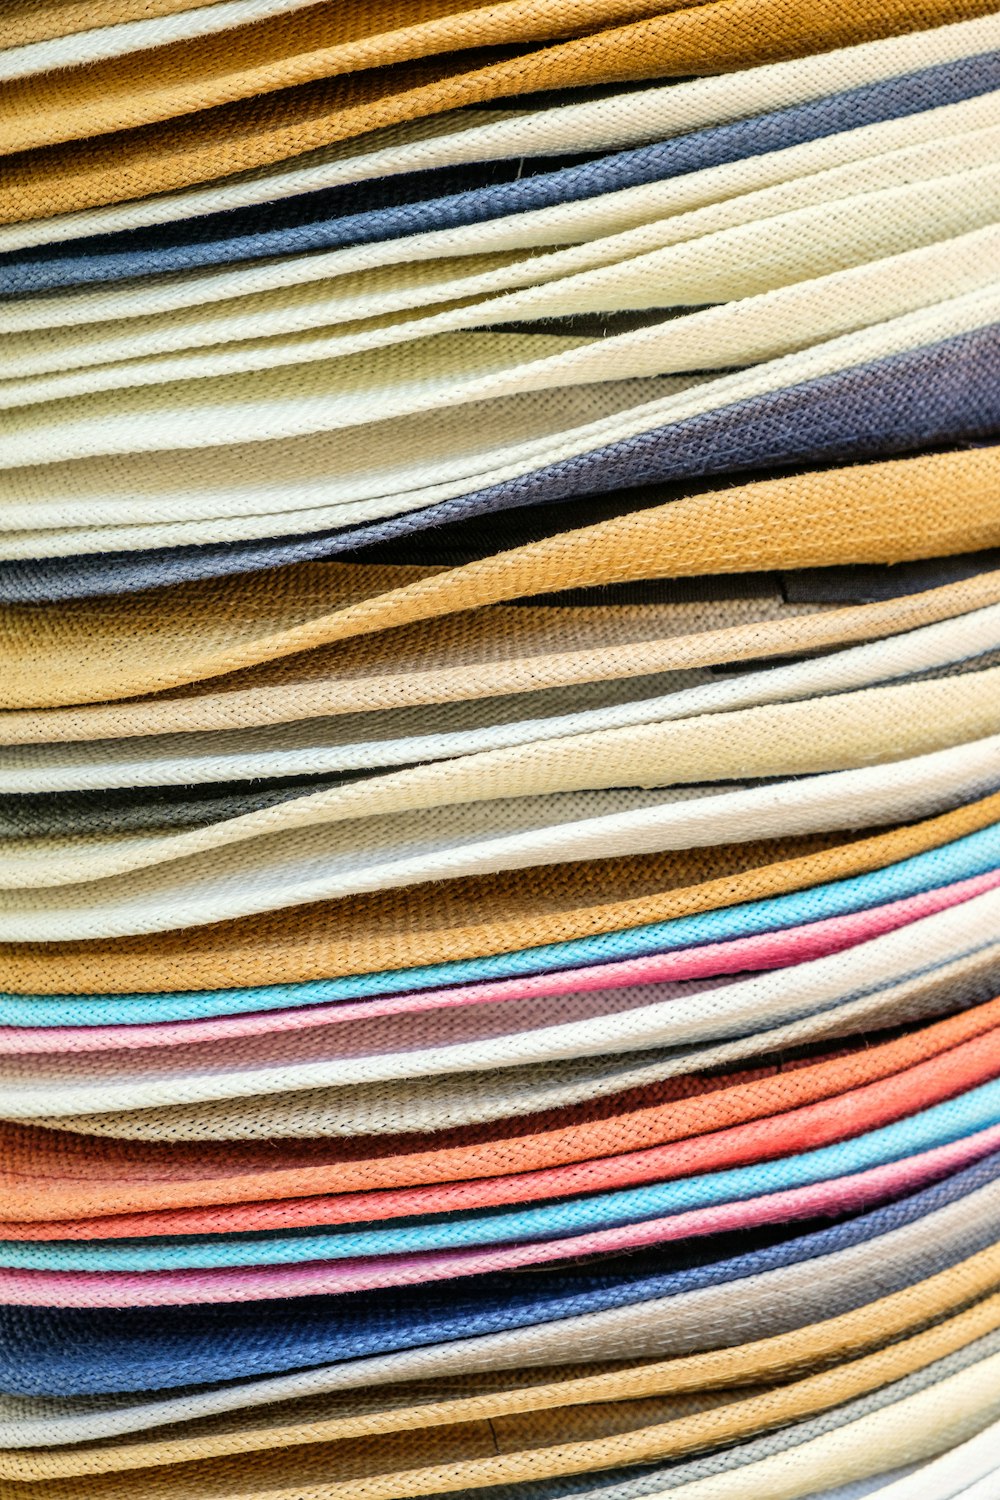 ein Stapel verschiedenfarbiger Papiere, die übereinander gestapelt sind